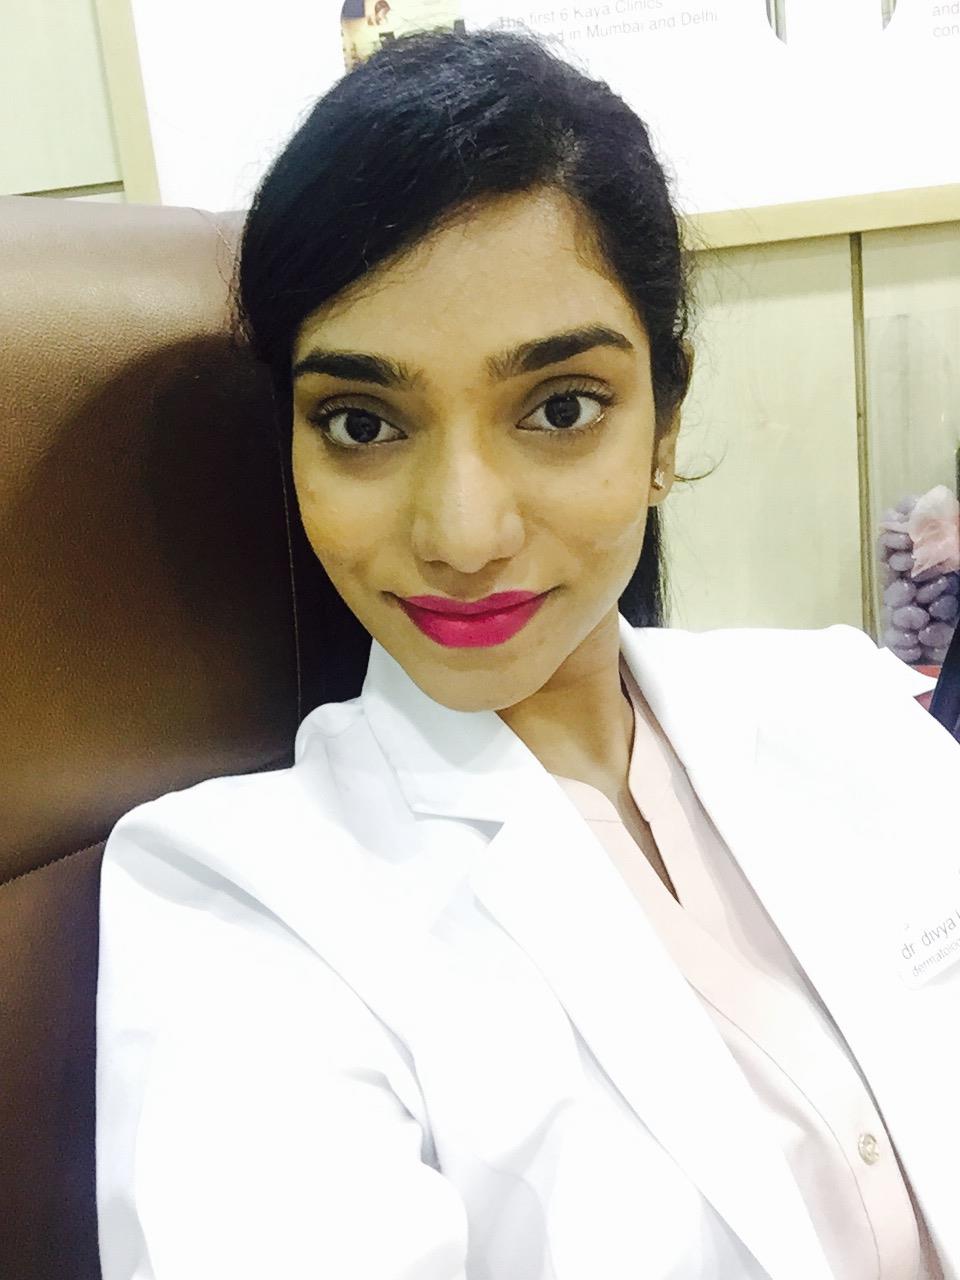 Dermatologist in Chennai